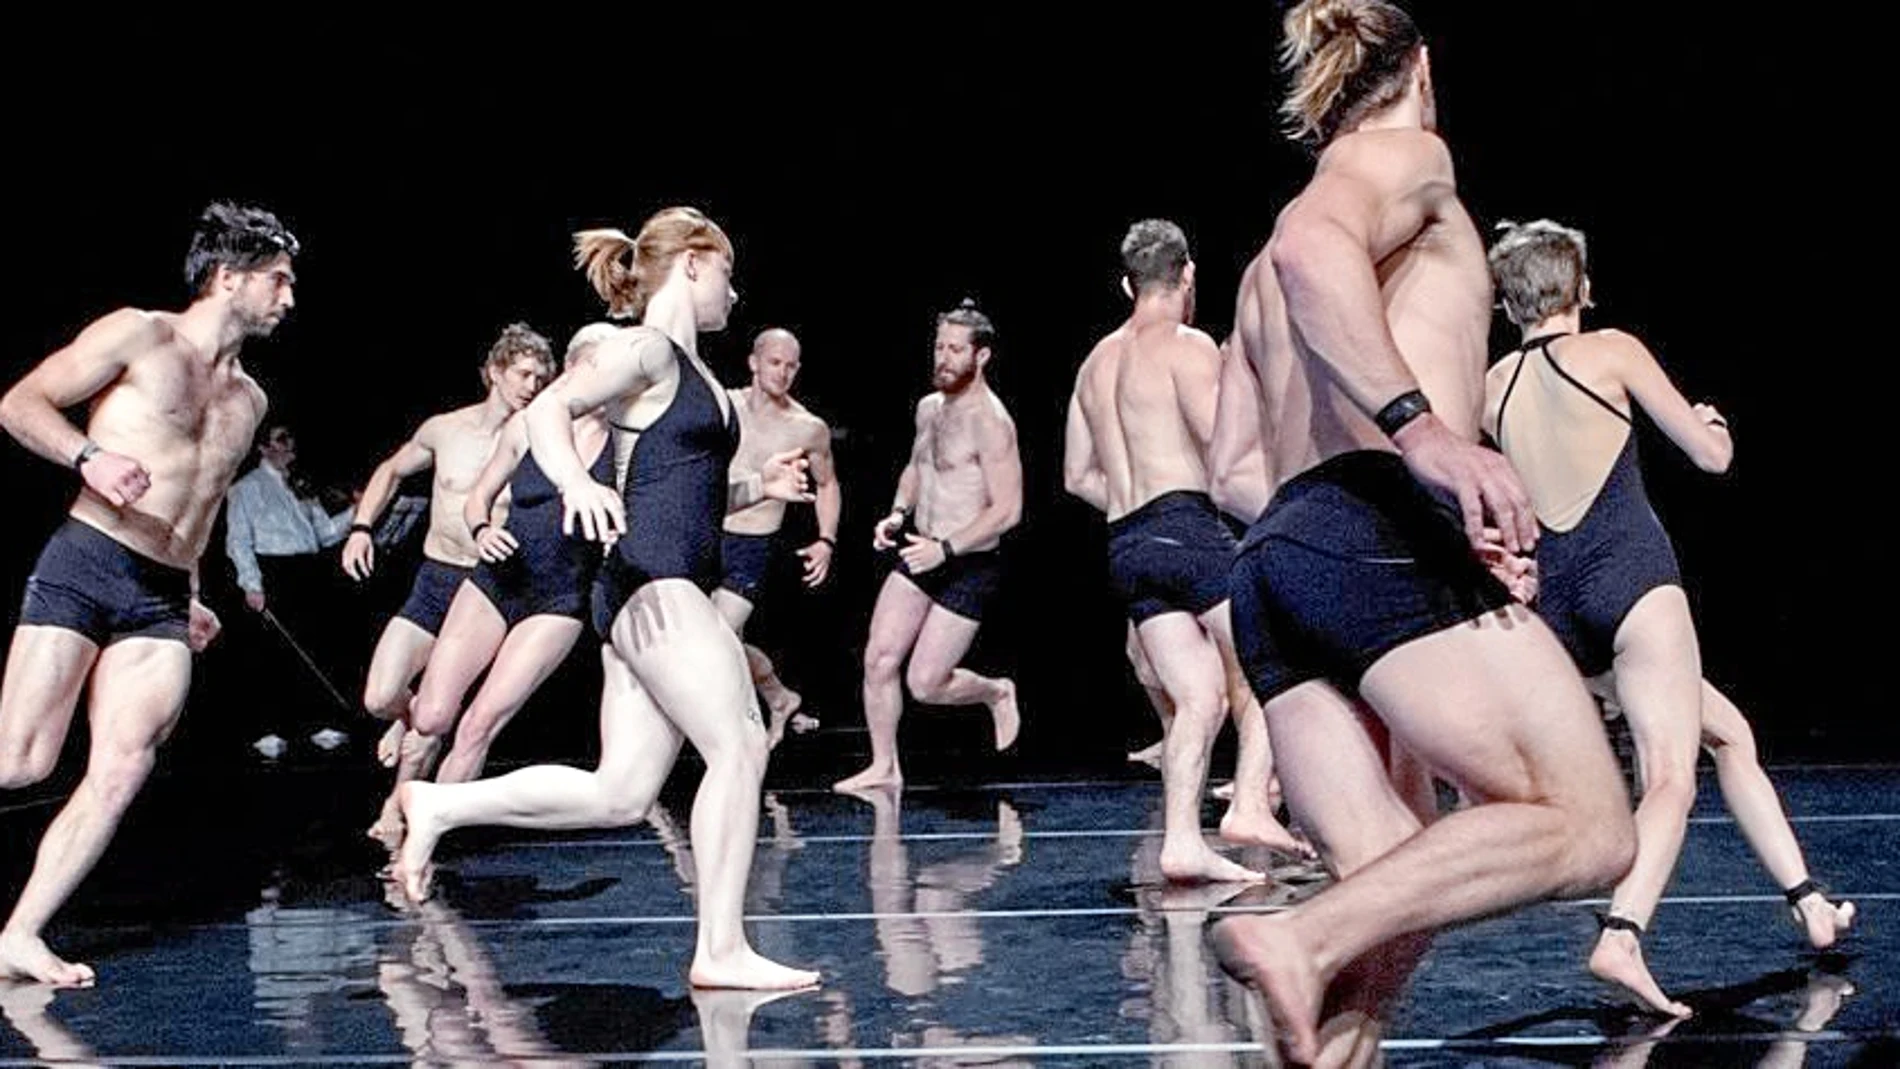 «Opus» mezcla circo, danza y la música en directo de Shostakóvich